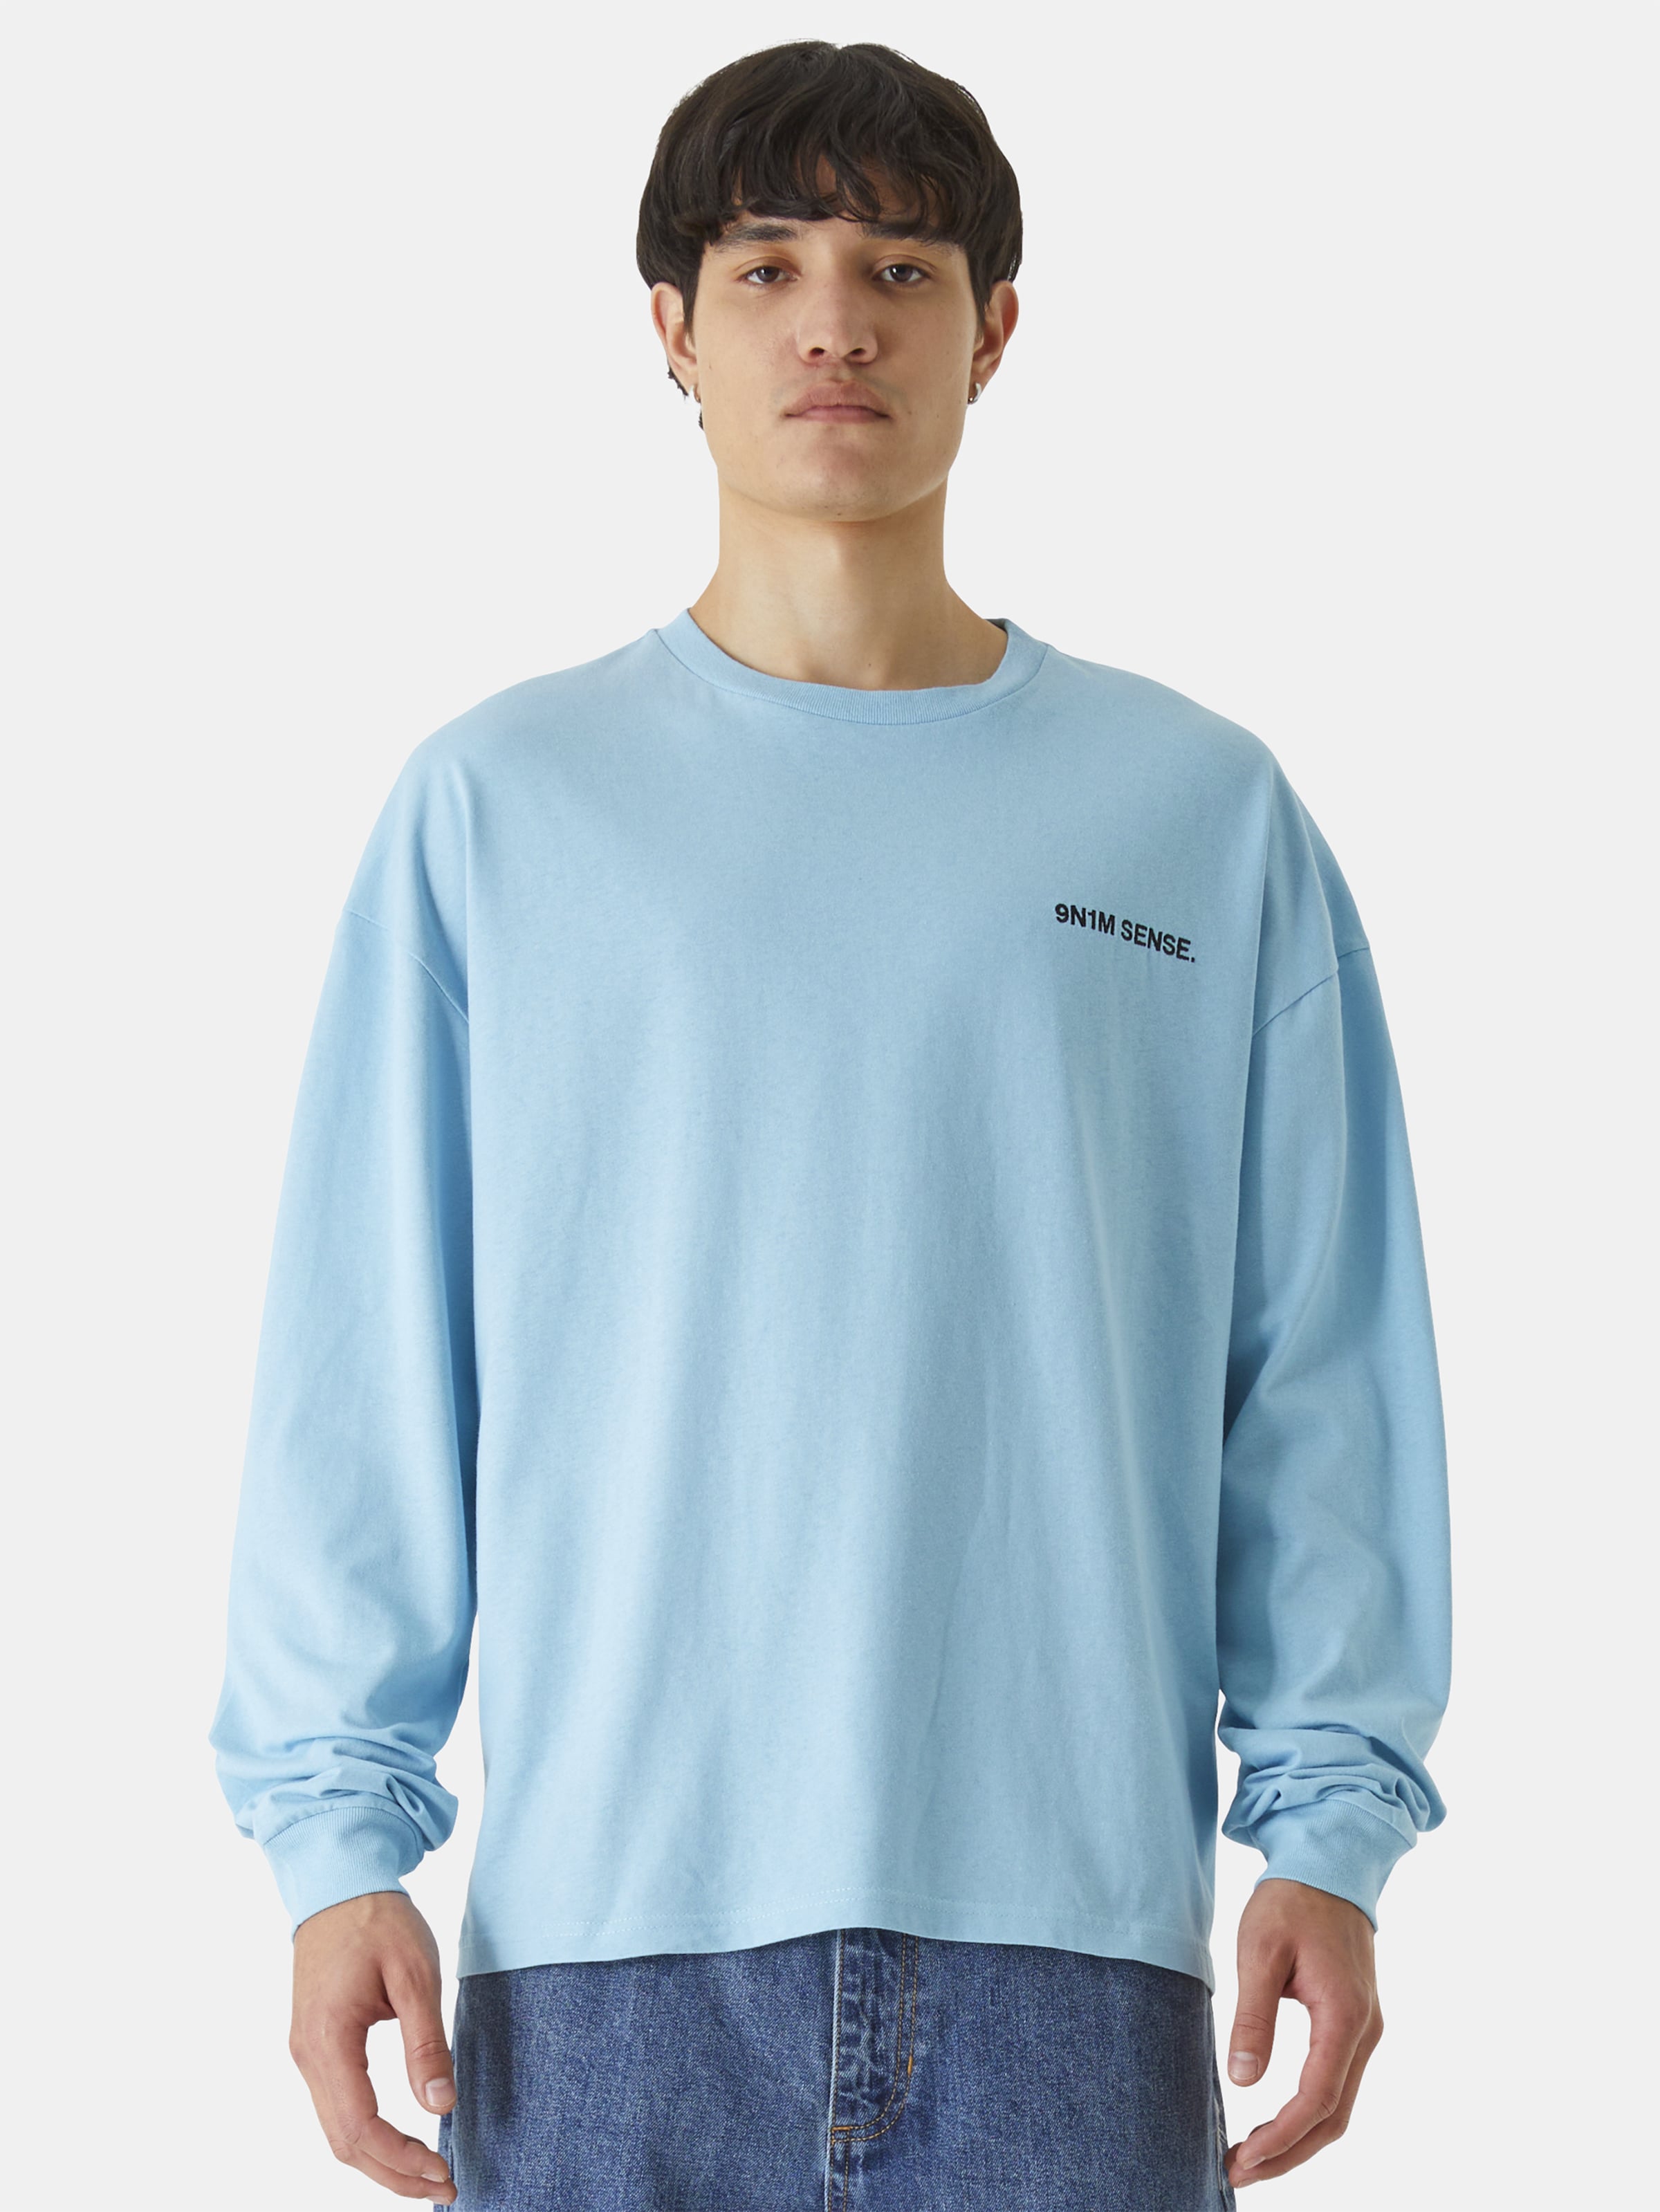 9N1M SENSE Essential Longsleeve T-Shirt Männer,Unisex op kleur blauw, Maat L